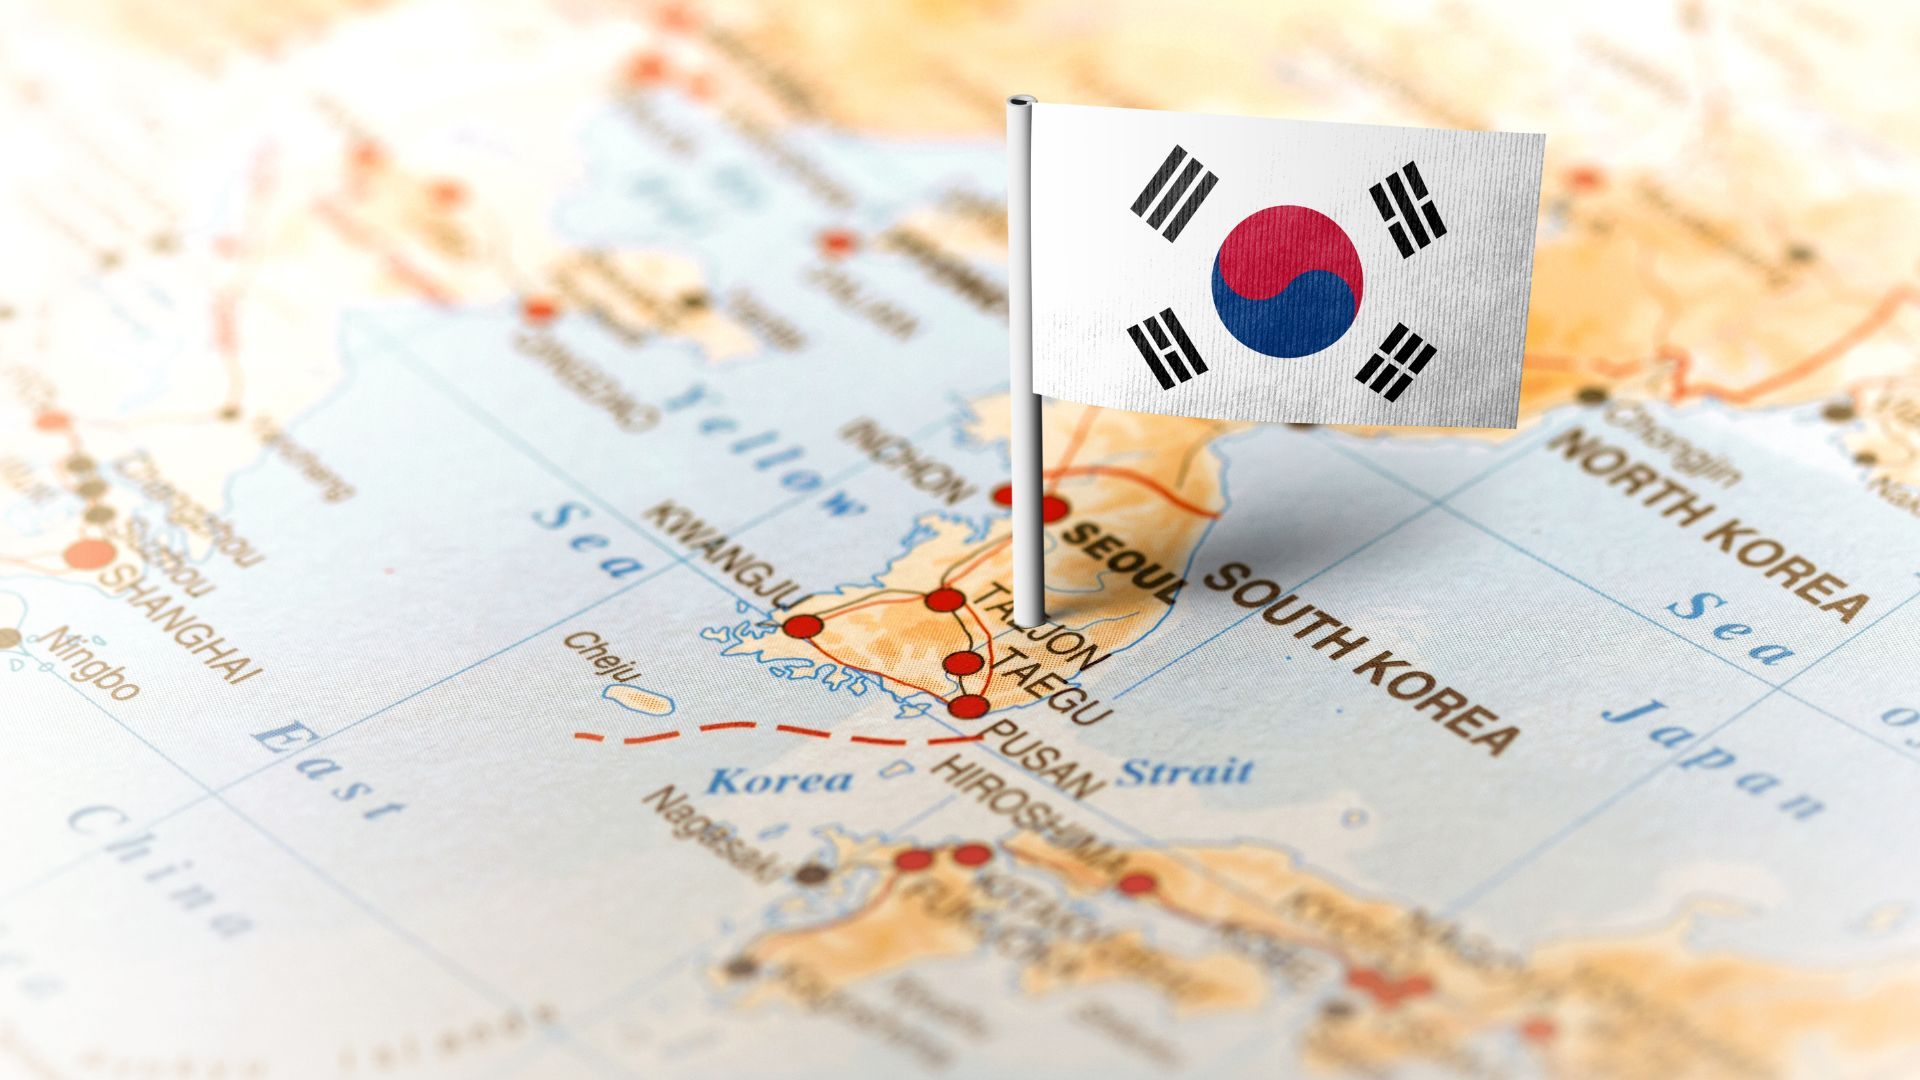 한국은 디지털 미래를 불태울 것인가?